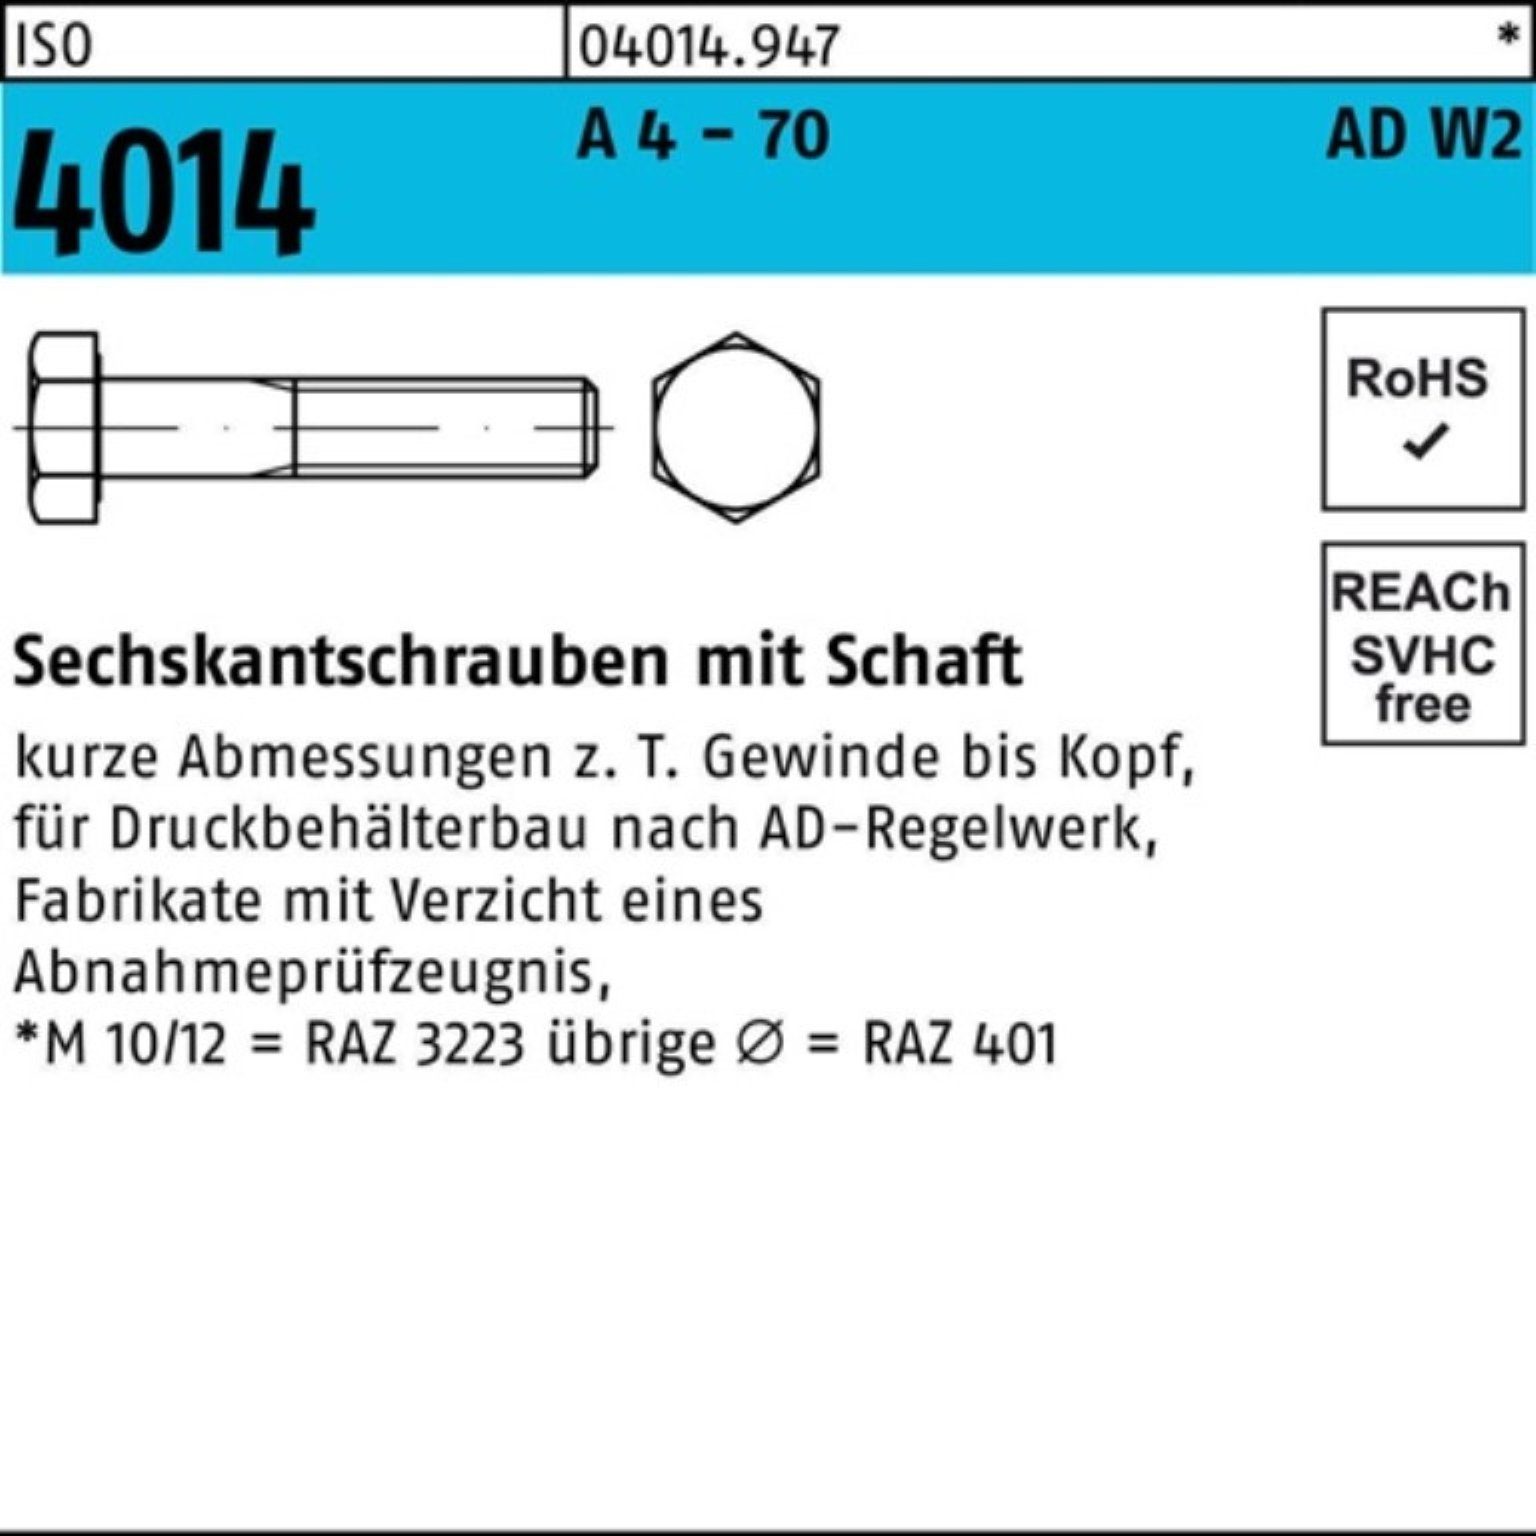 Bufab Sechskantschraube 100er Pack Sechskantschraube ISO 4014 Schaft M24x 100 A 4 - 70 AD-W2 1